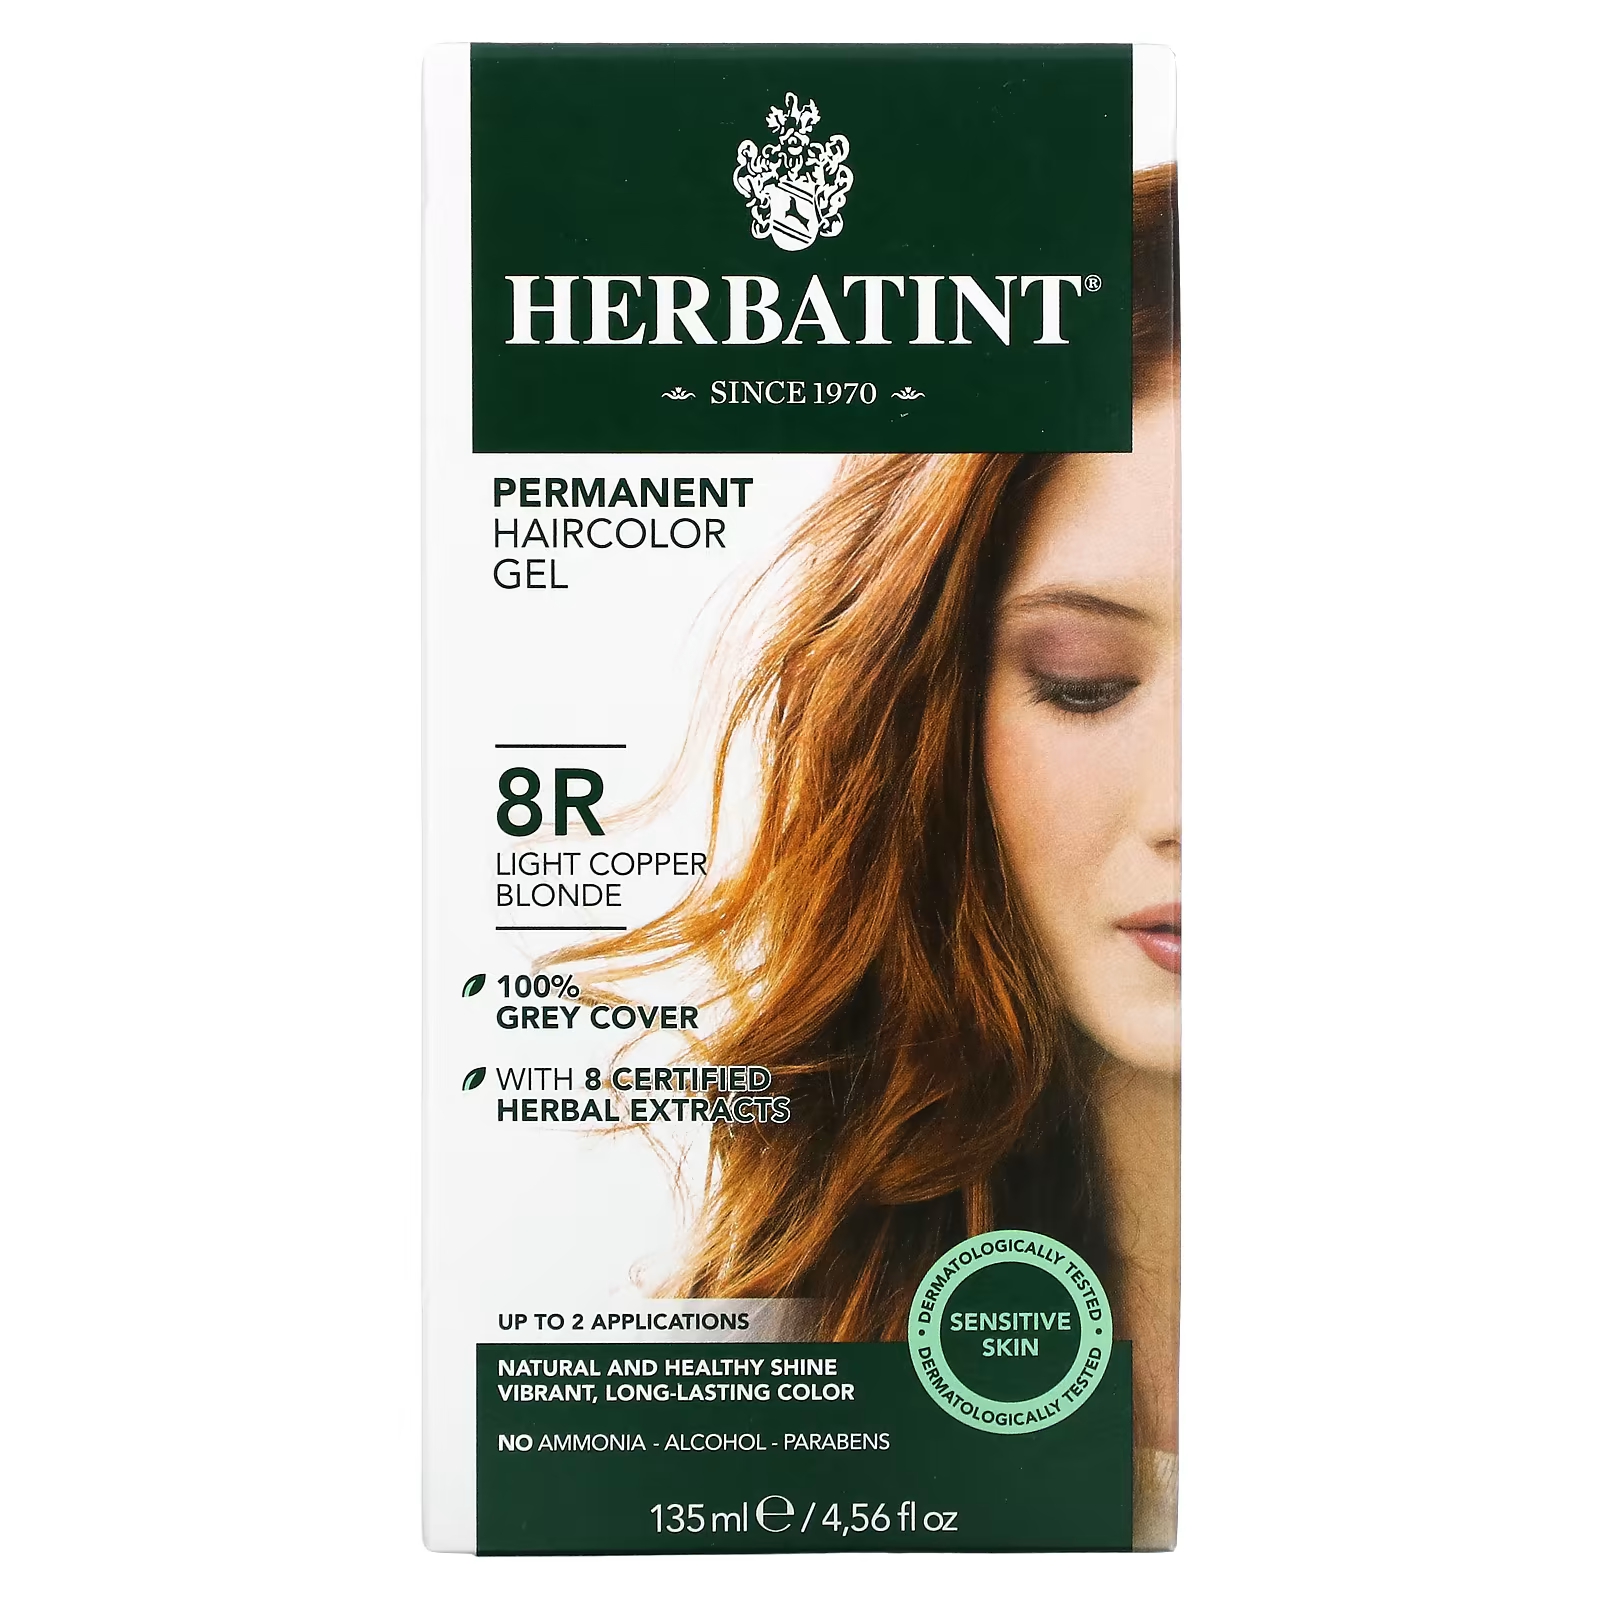 Перманентная гель-краска для волос Herbatint 8R светло-медный блондин, 135 мл перманентная гель краска для волос herbatint 10c шведский блондин 4 56 жидких унций 135 мл